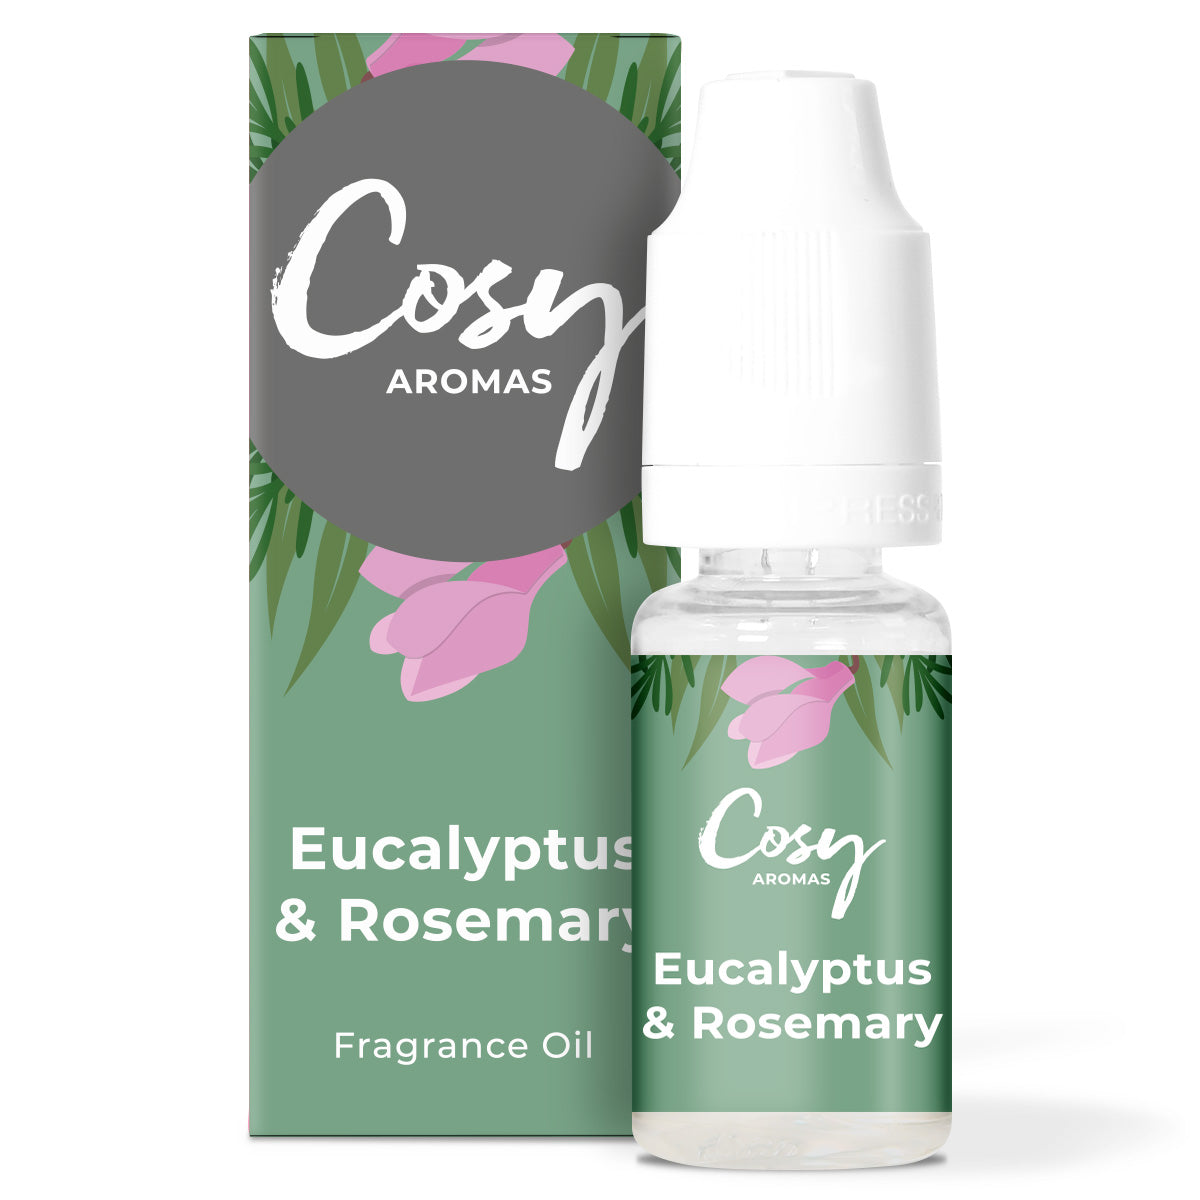 Eucalyptus & Rosemary Fragrance Oil.